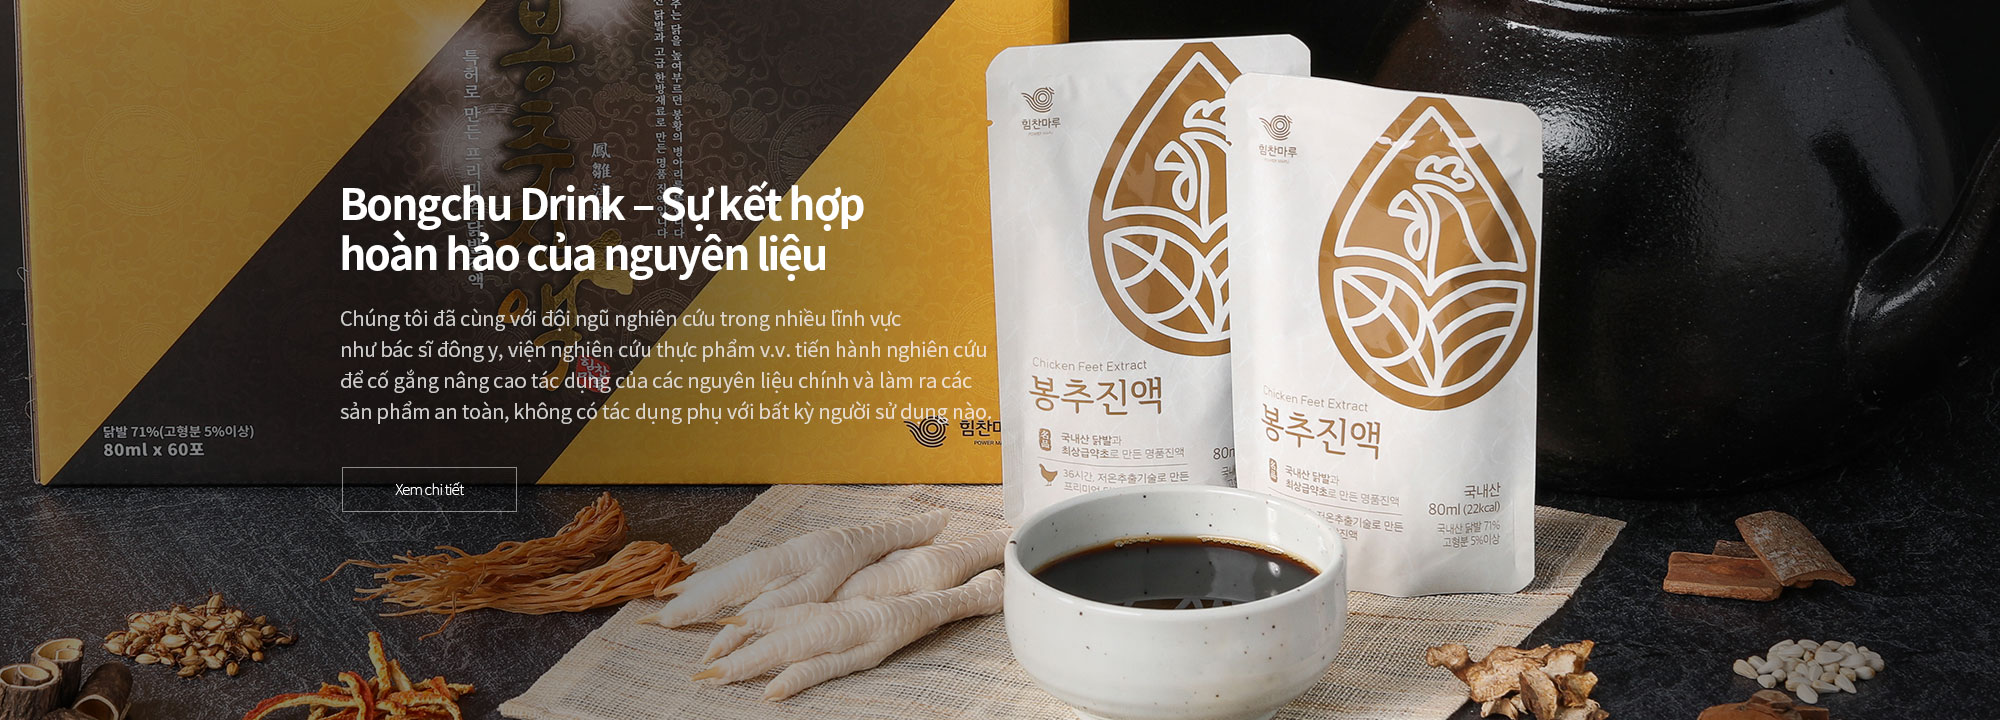 Bongchu Drink – Sự kết hợp hoàn hảo của nguyên liệu